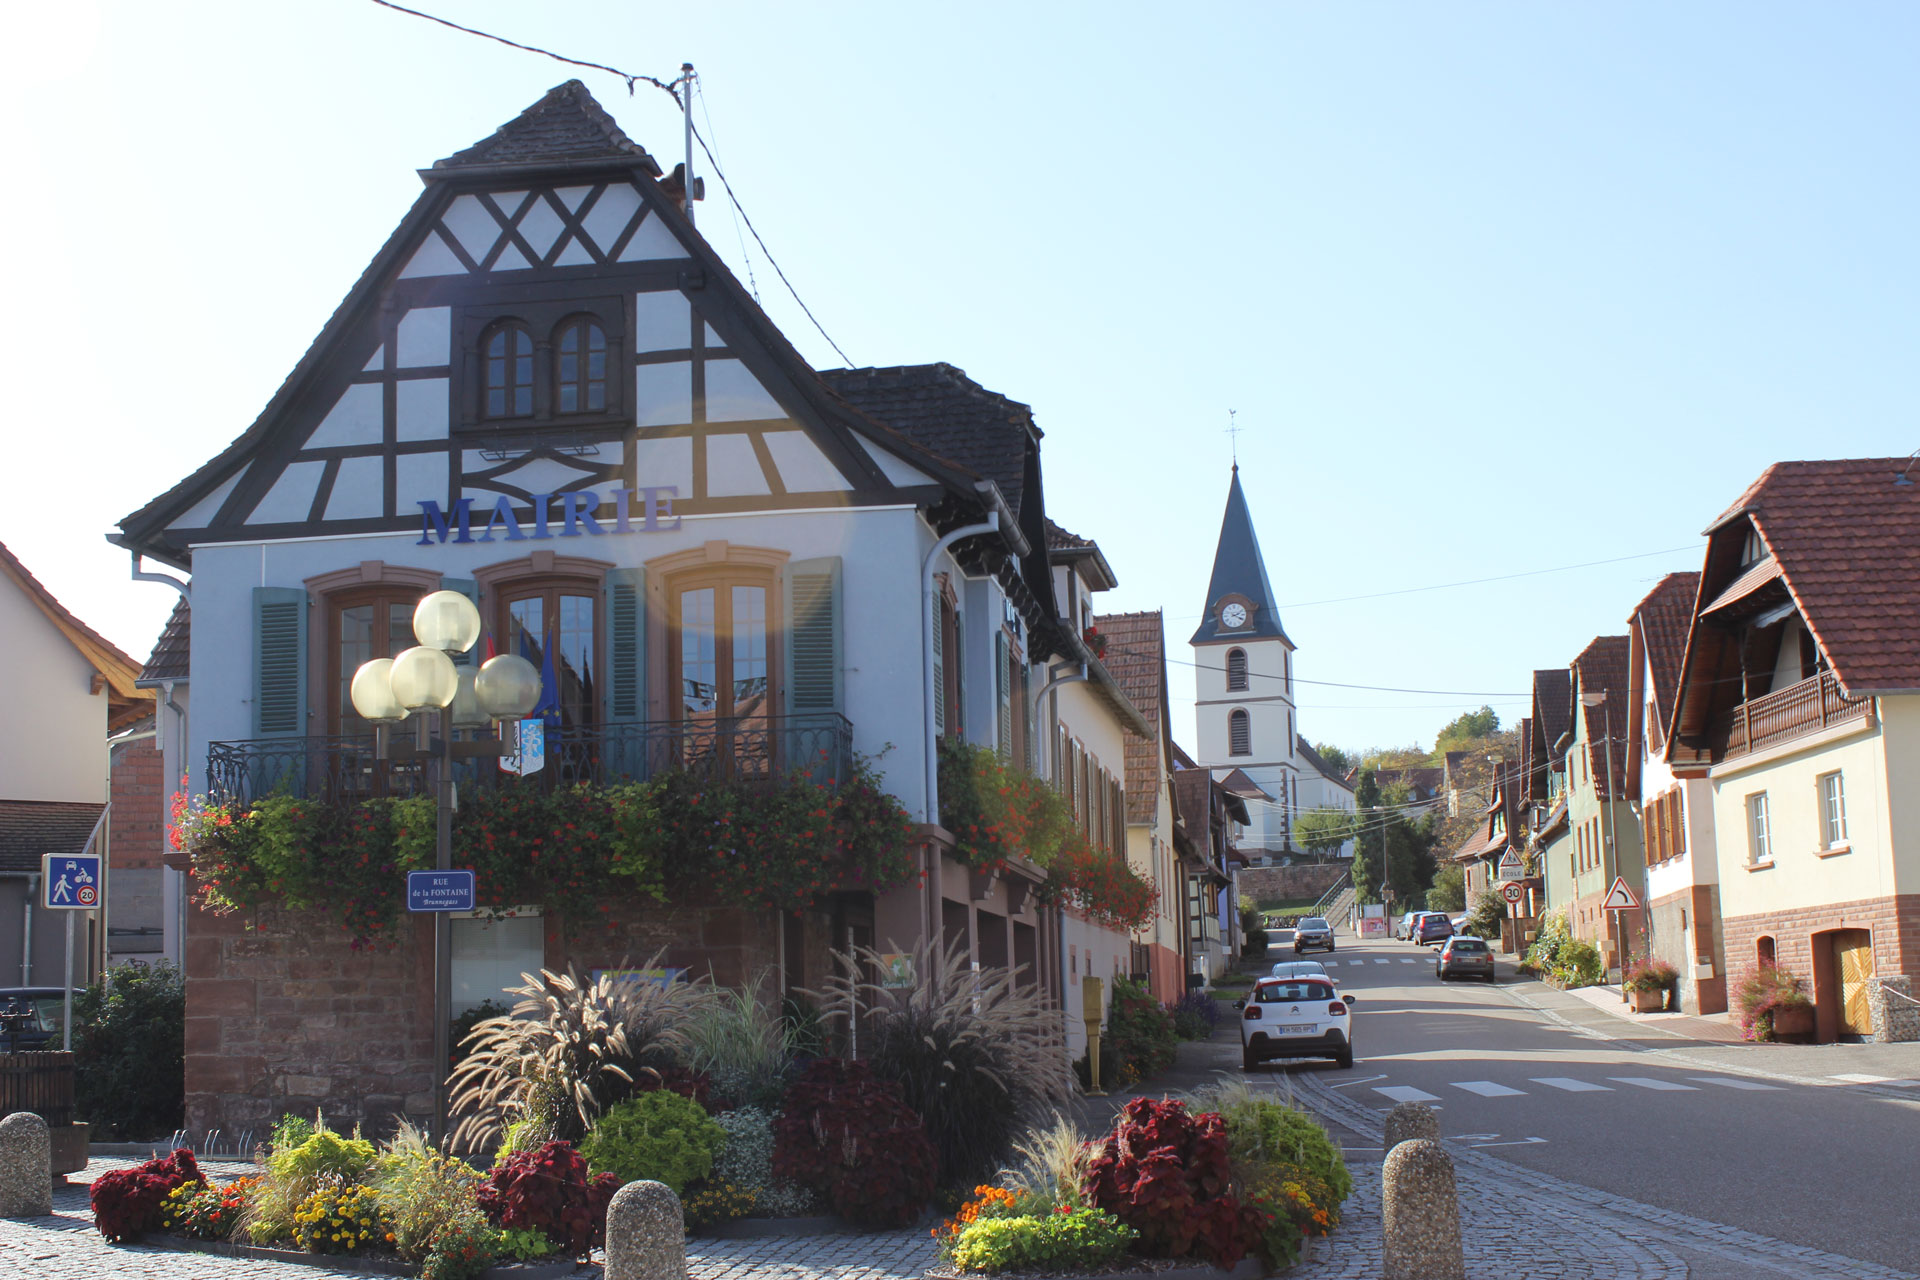 Visite guidée de Morsbronn-les-Bains le jeudi 20 juillet 2023